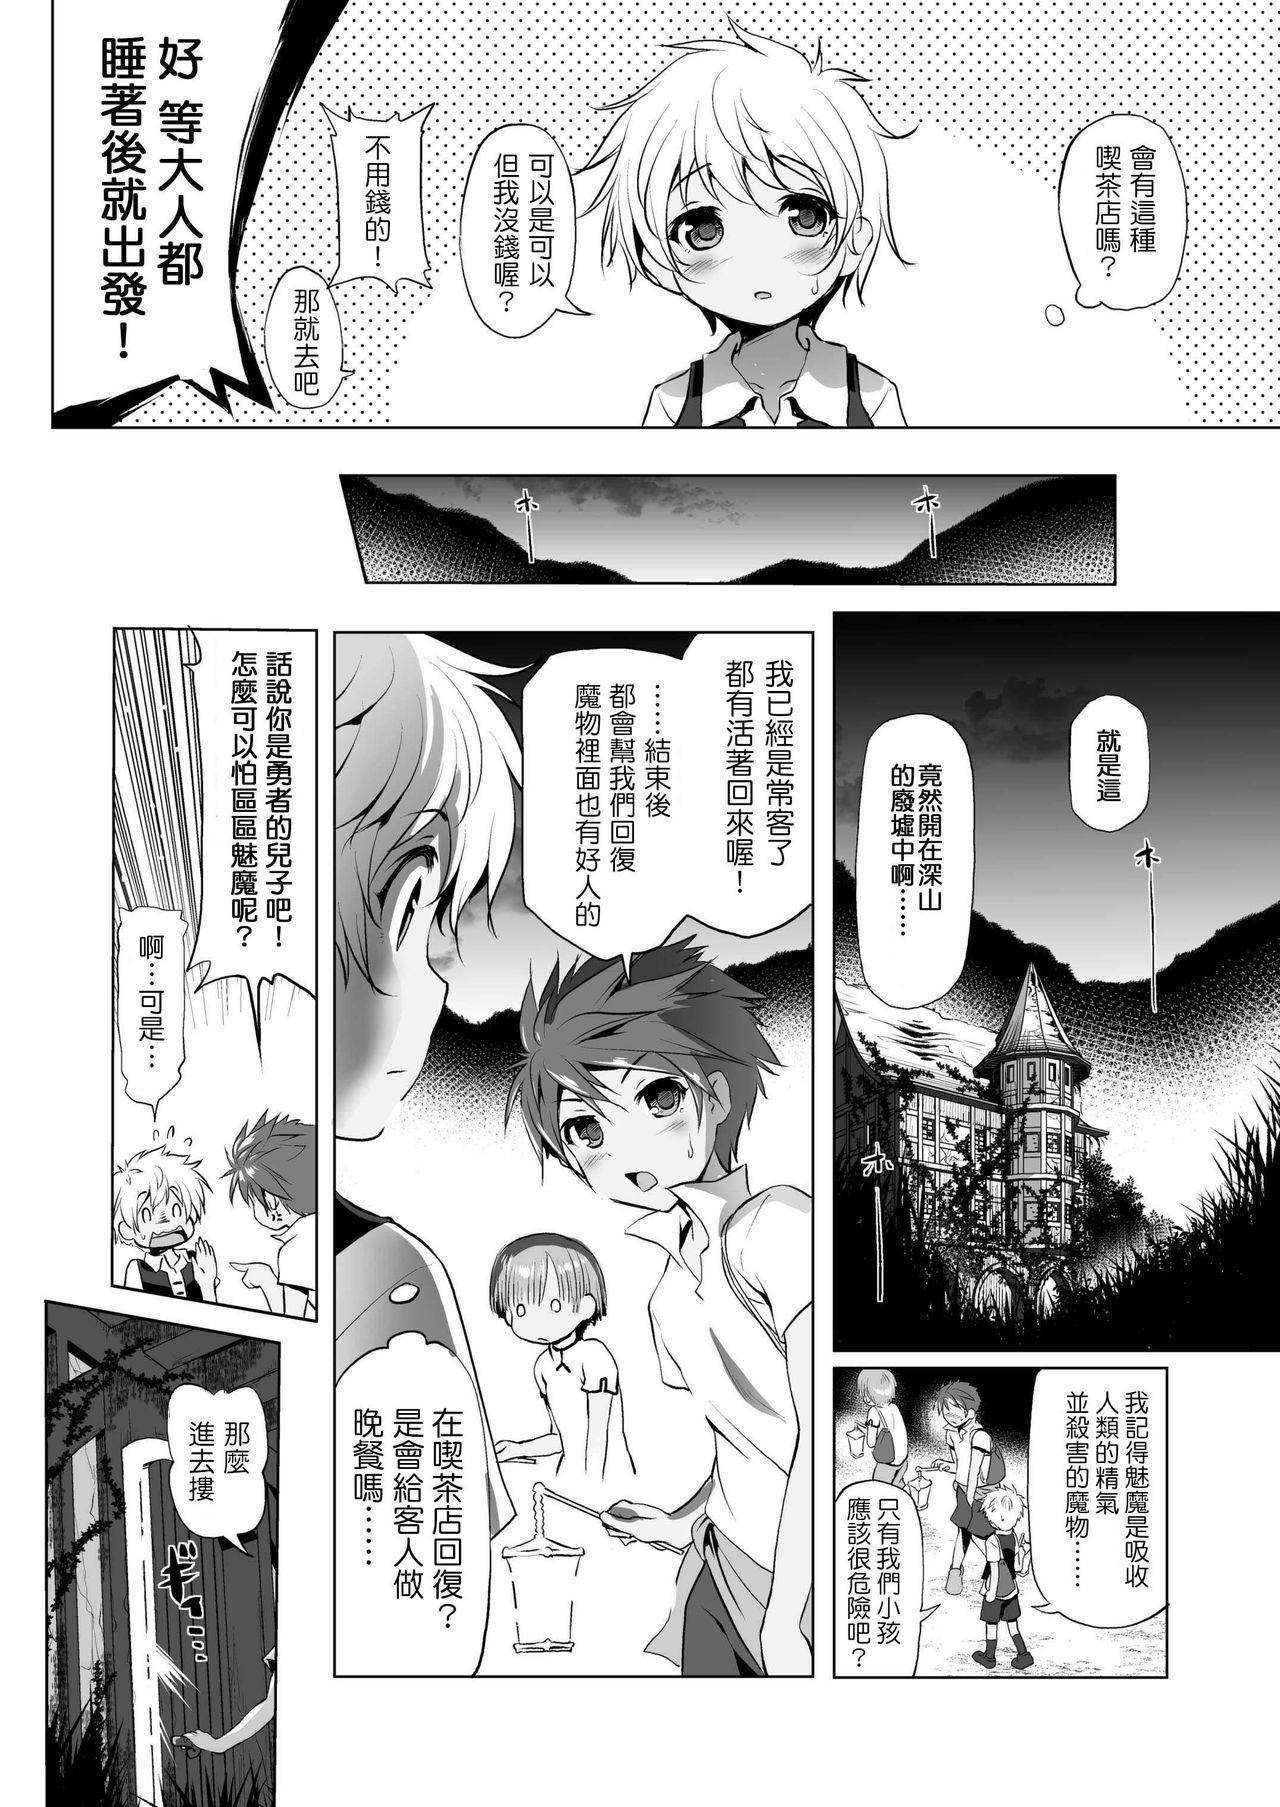 Fake Makotoni Zannen desu ga Bouken no Sho 1 wa Kiete Shimaimashita. Hairy Sexy - Page 7